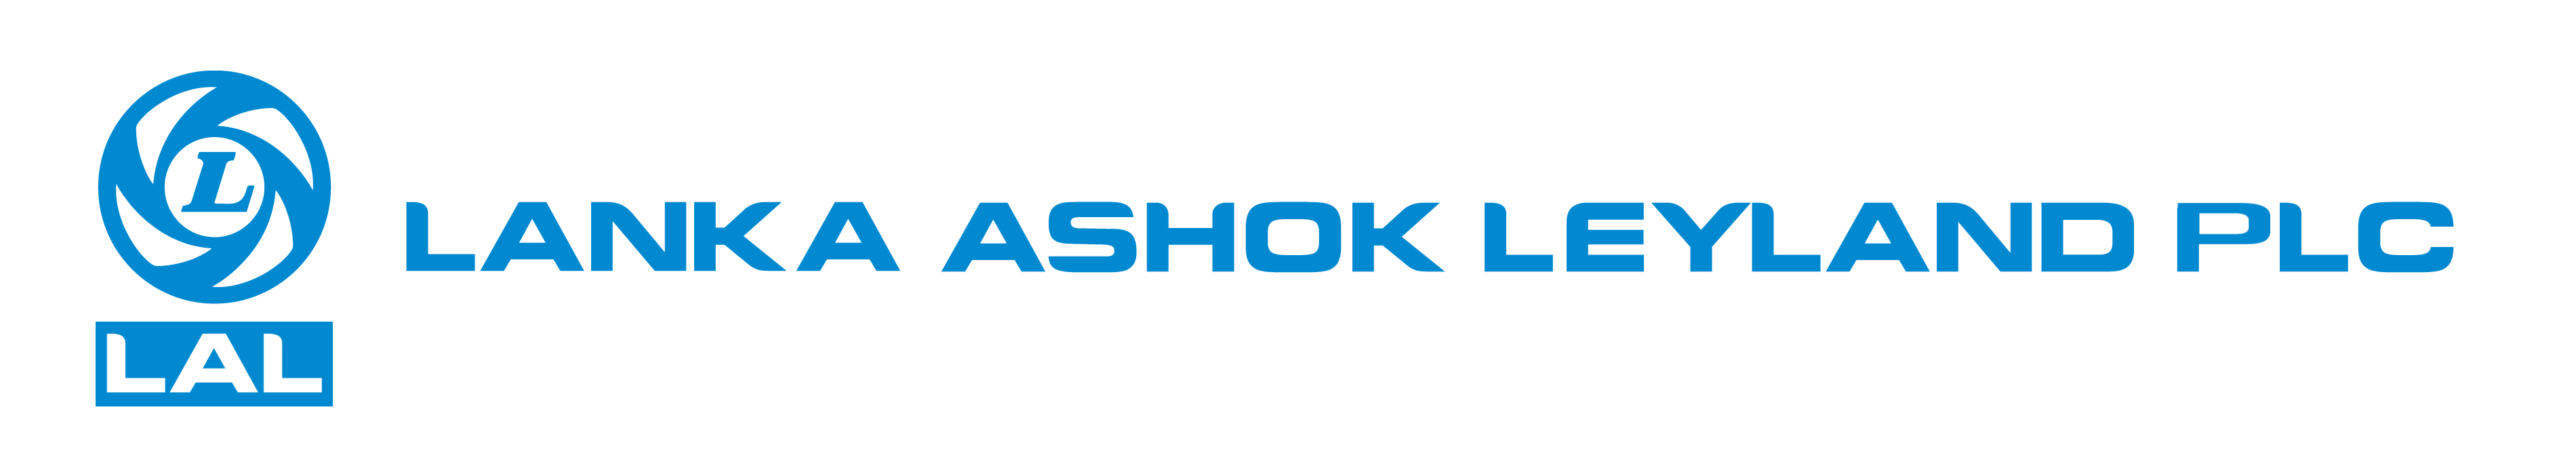 Share 115+ ashok leyland logo latest